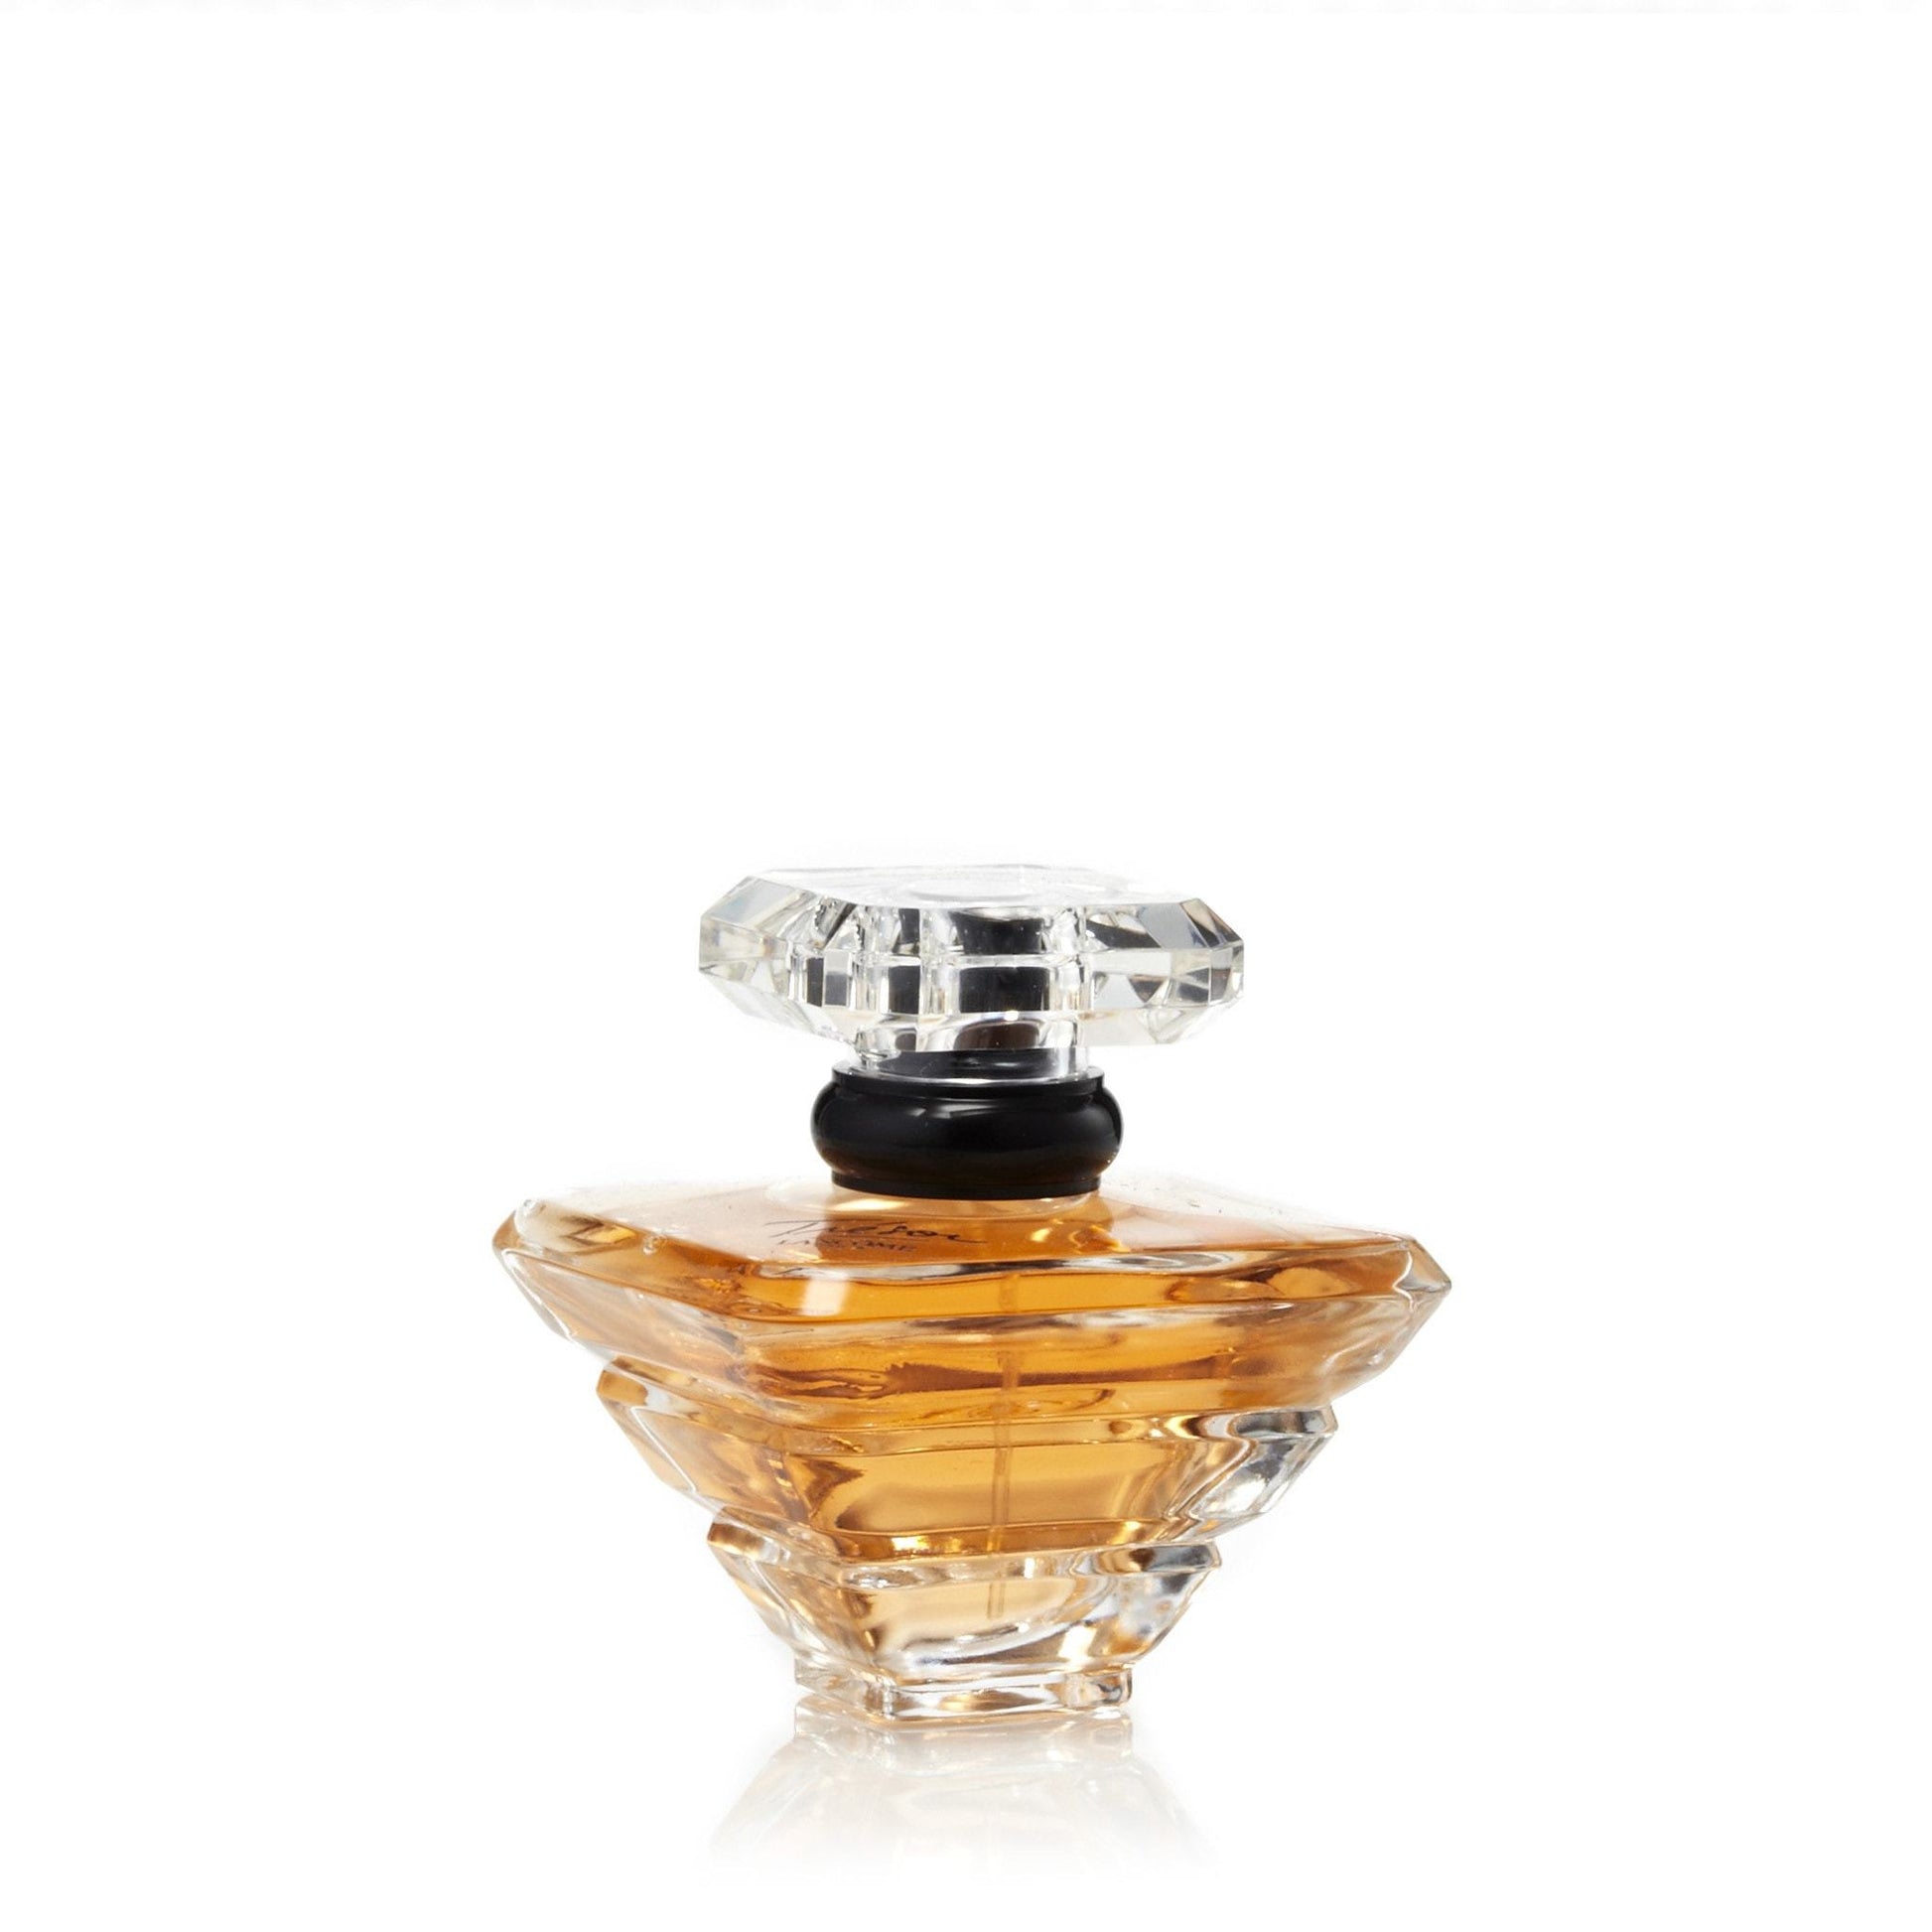 Lancome Tresor Eau de Parfum Elegant Rose & Delicate Fruit Blossoms  Vaporisateur Natural Spray For Women 3.4 oz